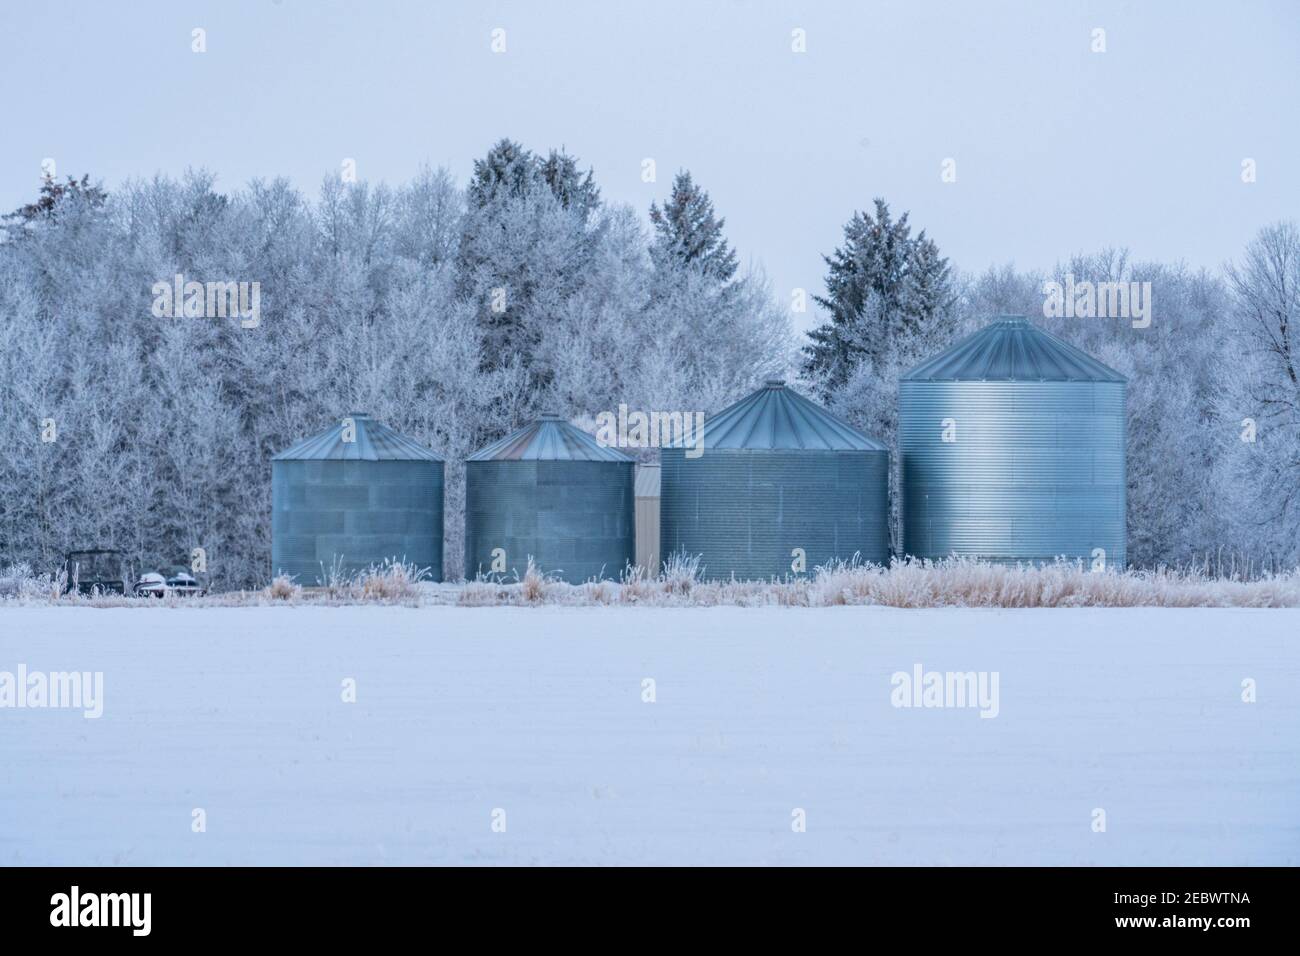 États-Unis, Idaho, Bellevue, silos agricoles en hiver Banque D'Images